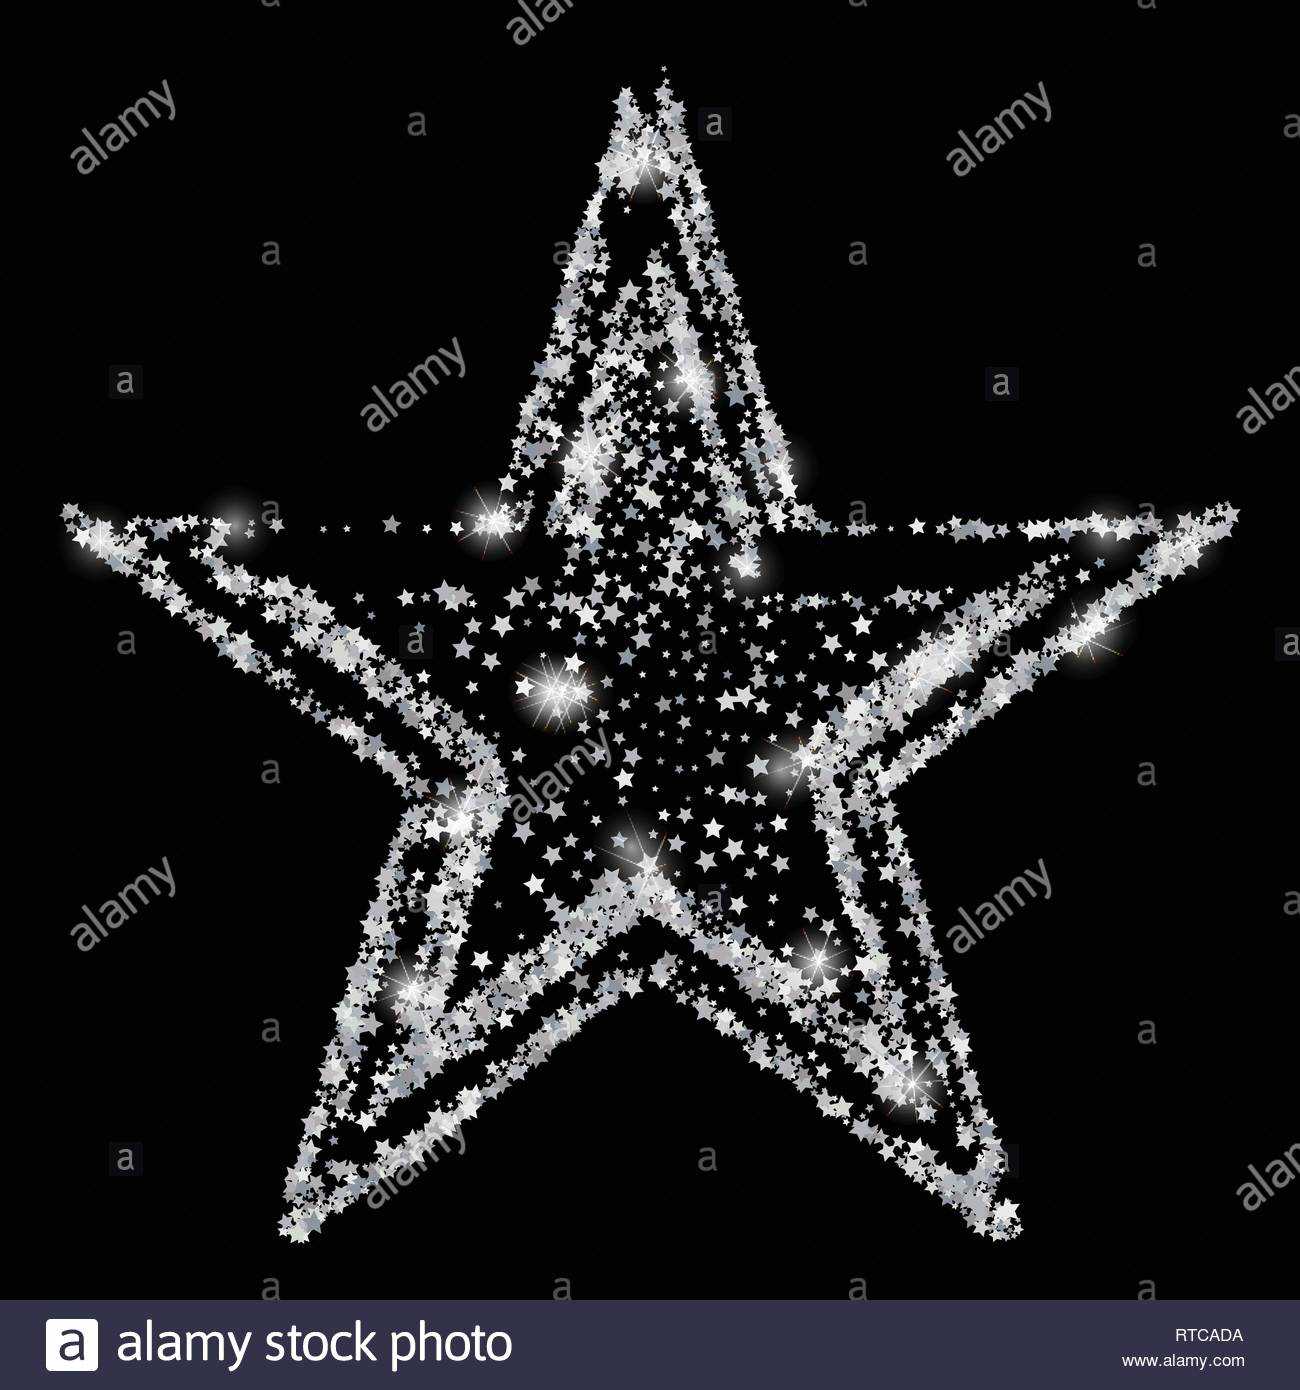 Silver Glitter Star Of Many Small Stars. Silver Confetti In Small Certificate Template